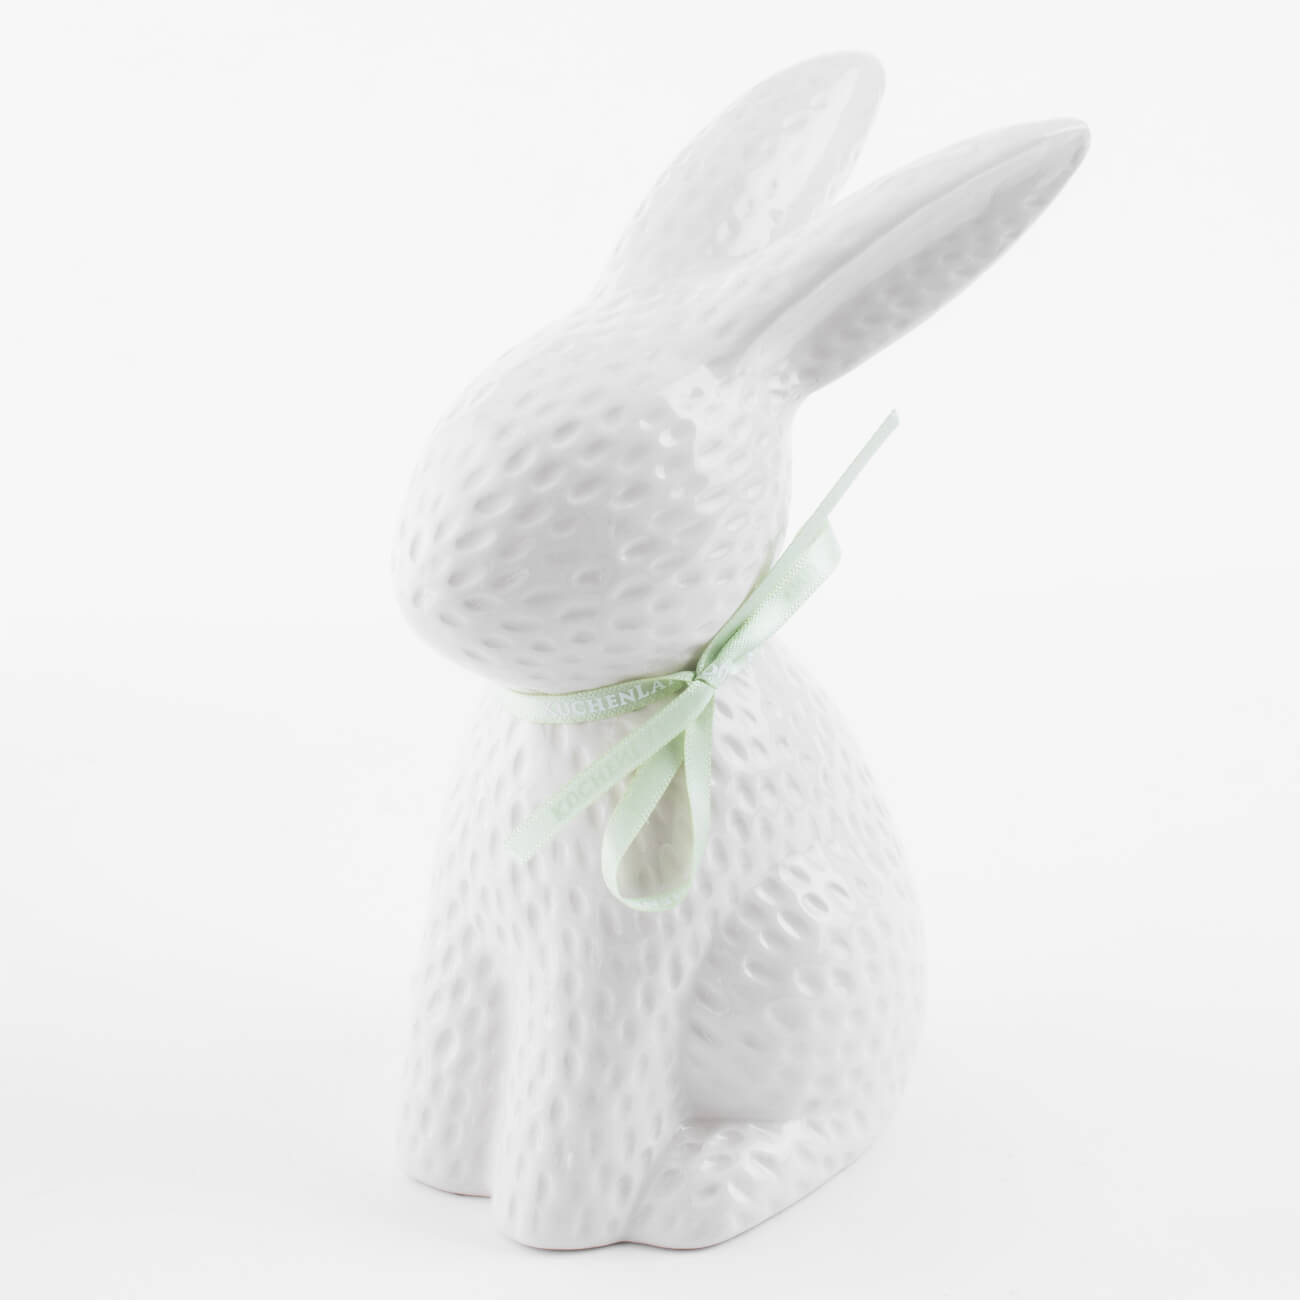 Статуэтка, 18 см, керамика, молочная Кролик сидит, Easter blooming емкость для хранения 17х14 см 1 5 л с ручкой керамика молочная перламутр кролик easter